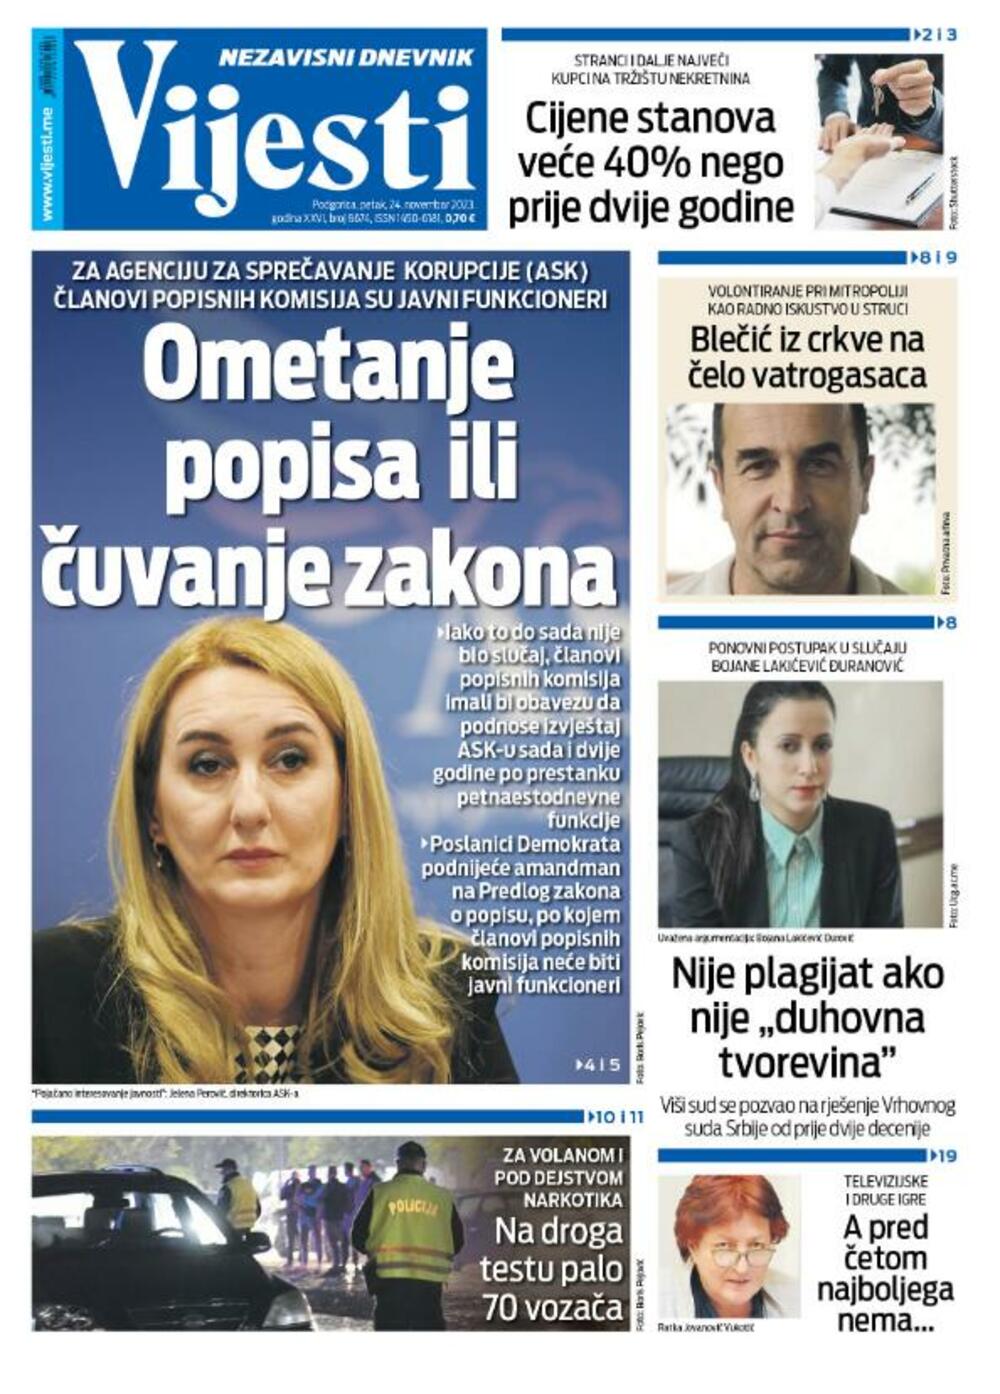 Naslovna strana "Vijesti" za 24. novembar 2023., Foto: Vijesti